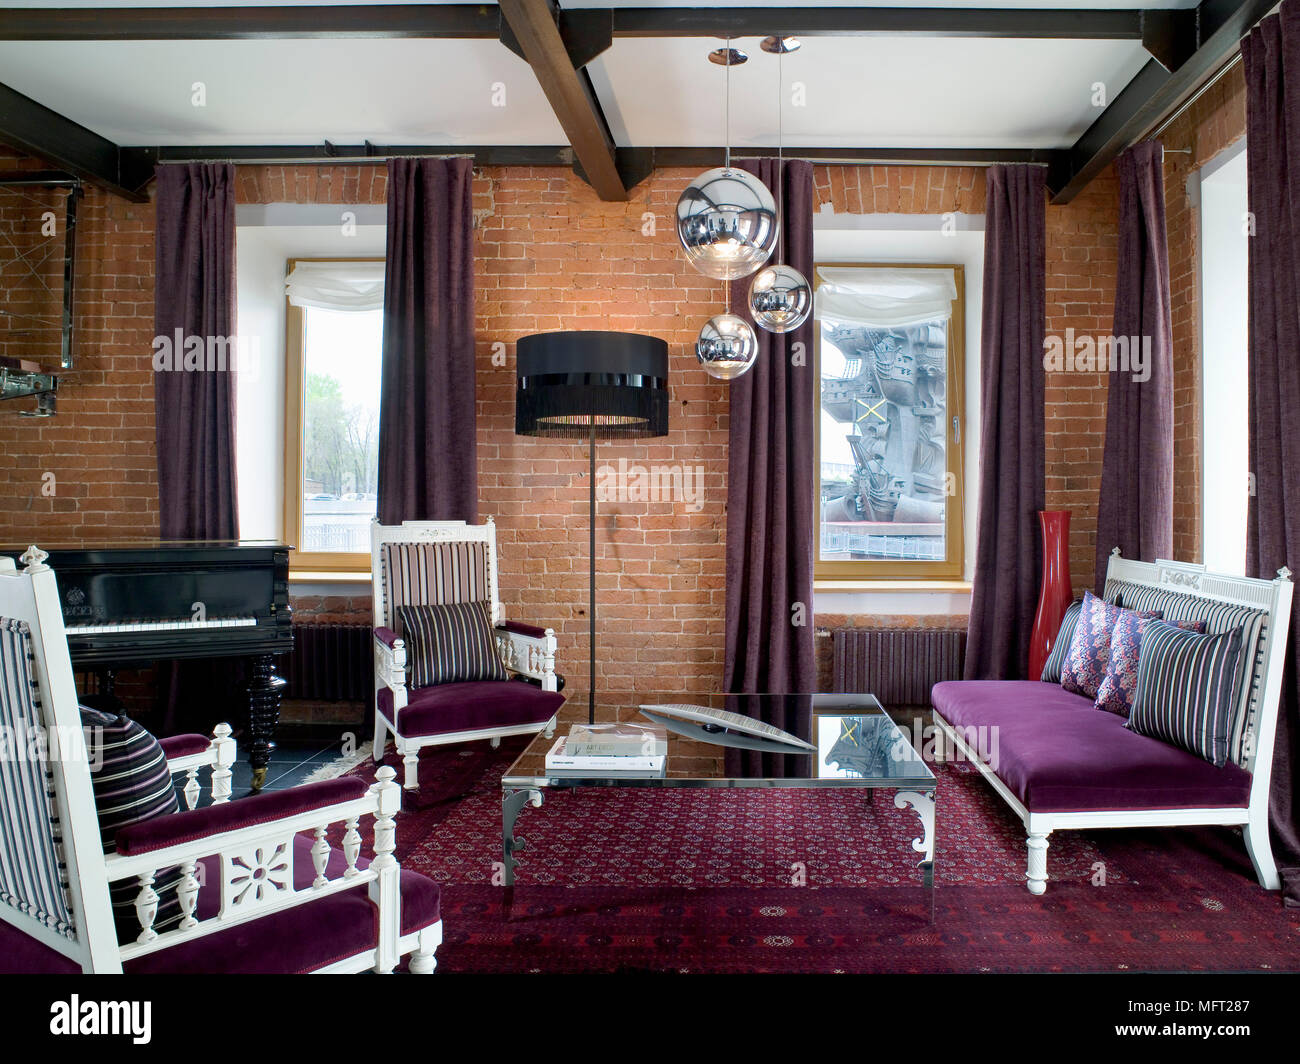 Zona salotto con tappeti color porpora e canapè rivolta verso il ripiano in vetro tavolo da caffè con muri con mattoni a vista e travi in legno a vista Foto Stock